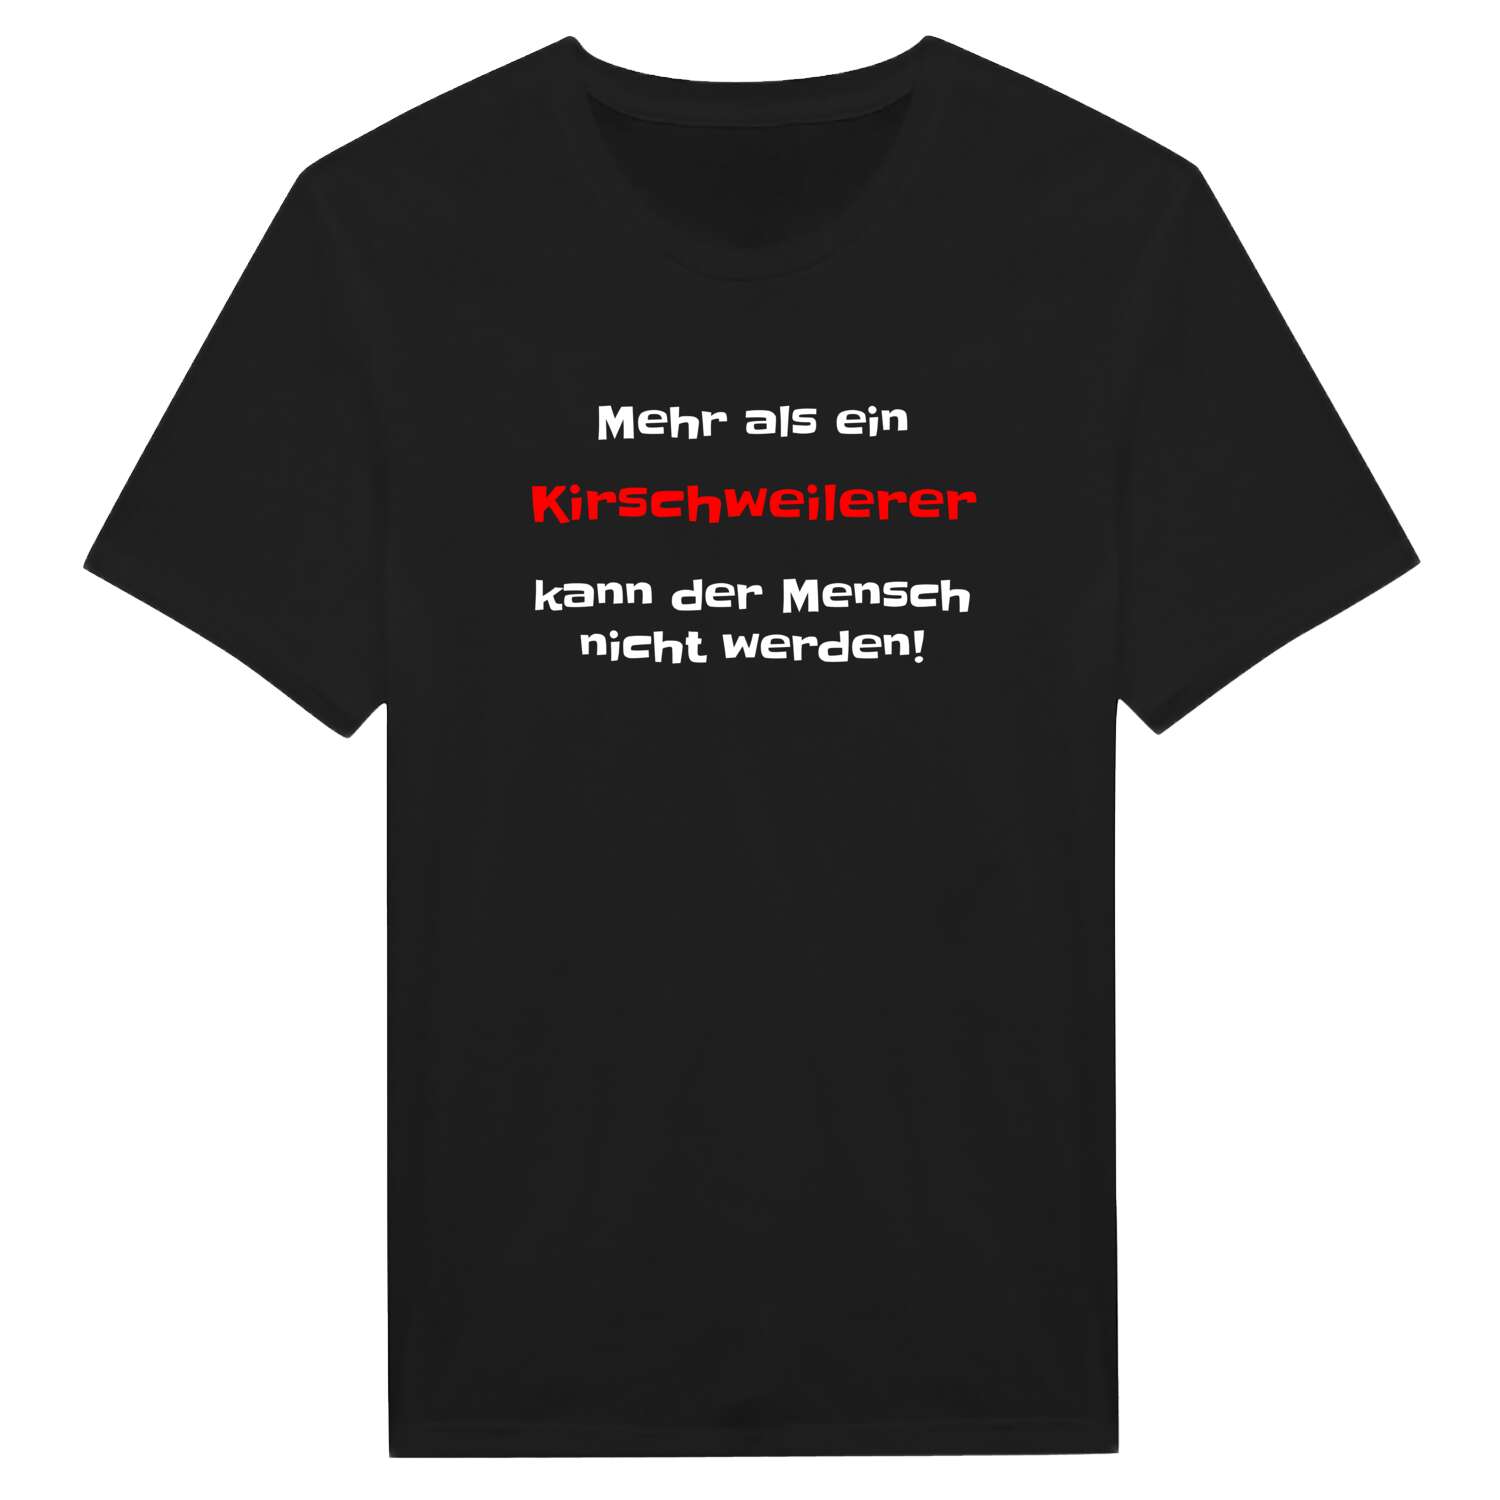 Kirschweiler T-Shirt »Mehr als ein«